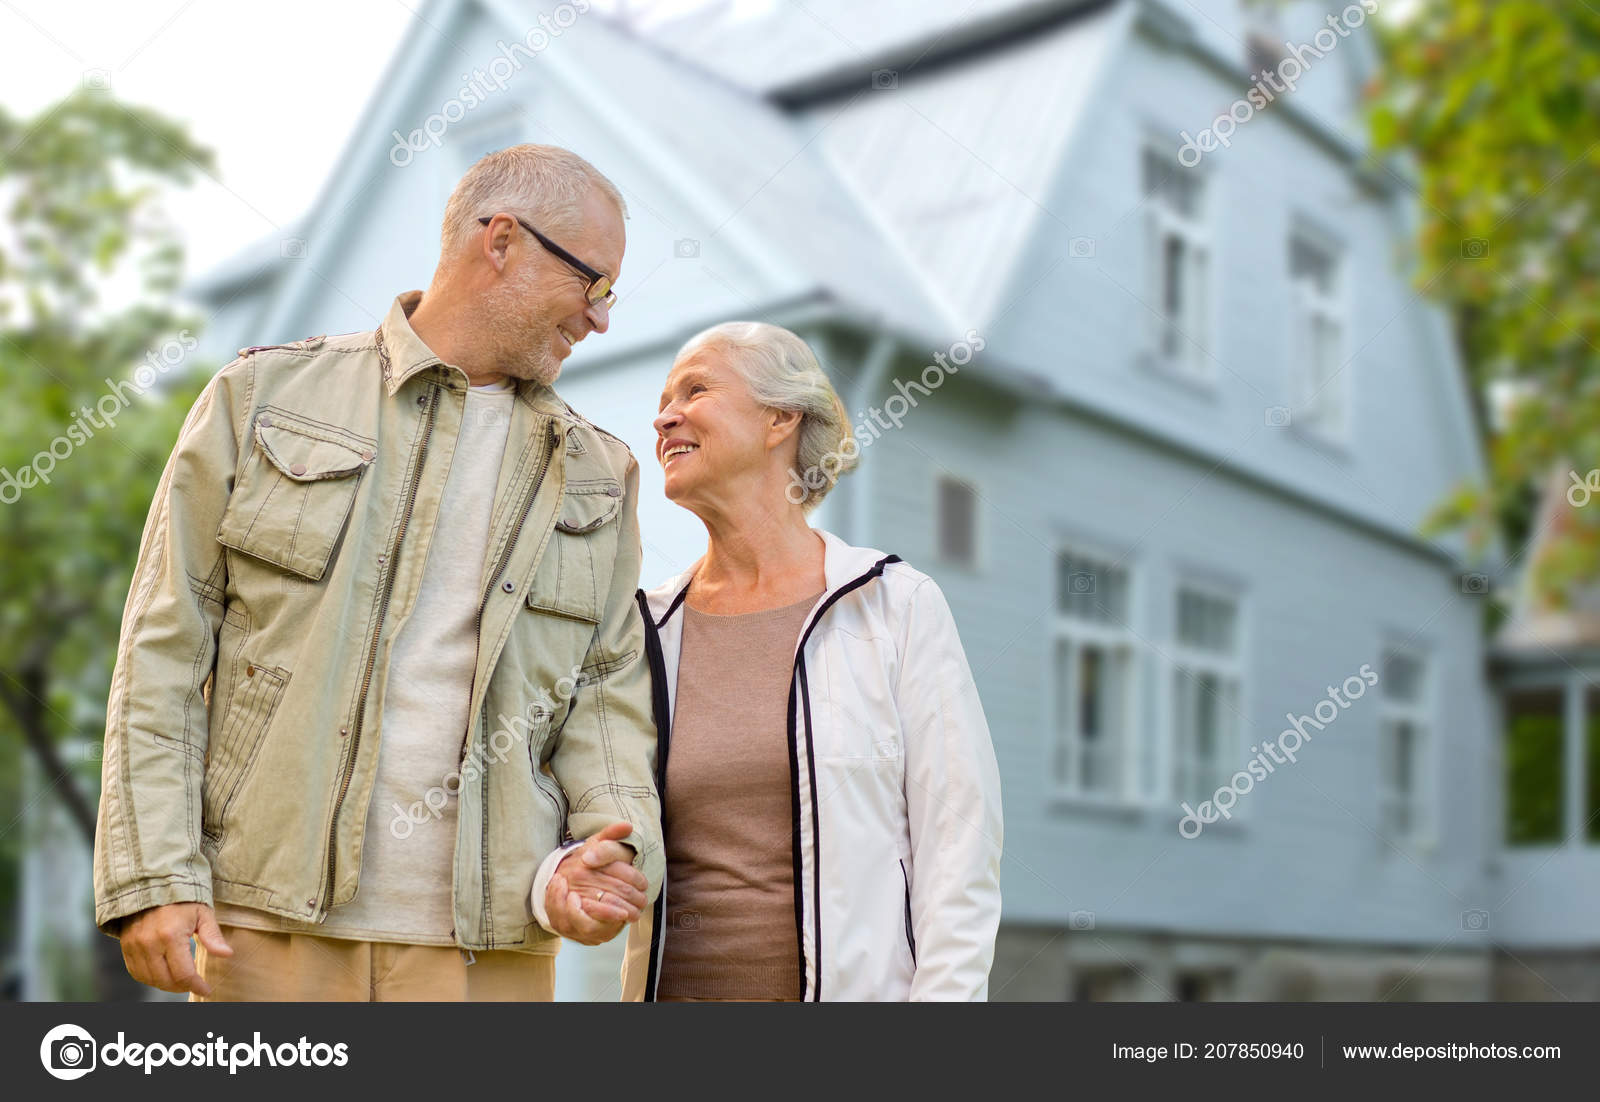 Покупка недвижимости пенсионерам. Ипотека для пенсионеров. Пенсионеры недвижимость. Ипотека старики. Квартира пенсионера.